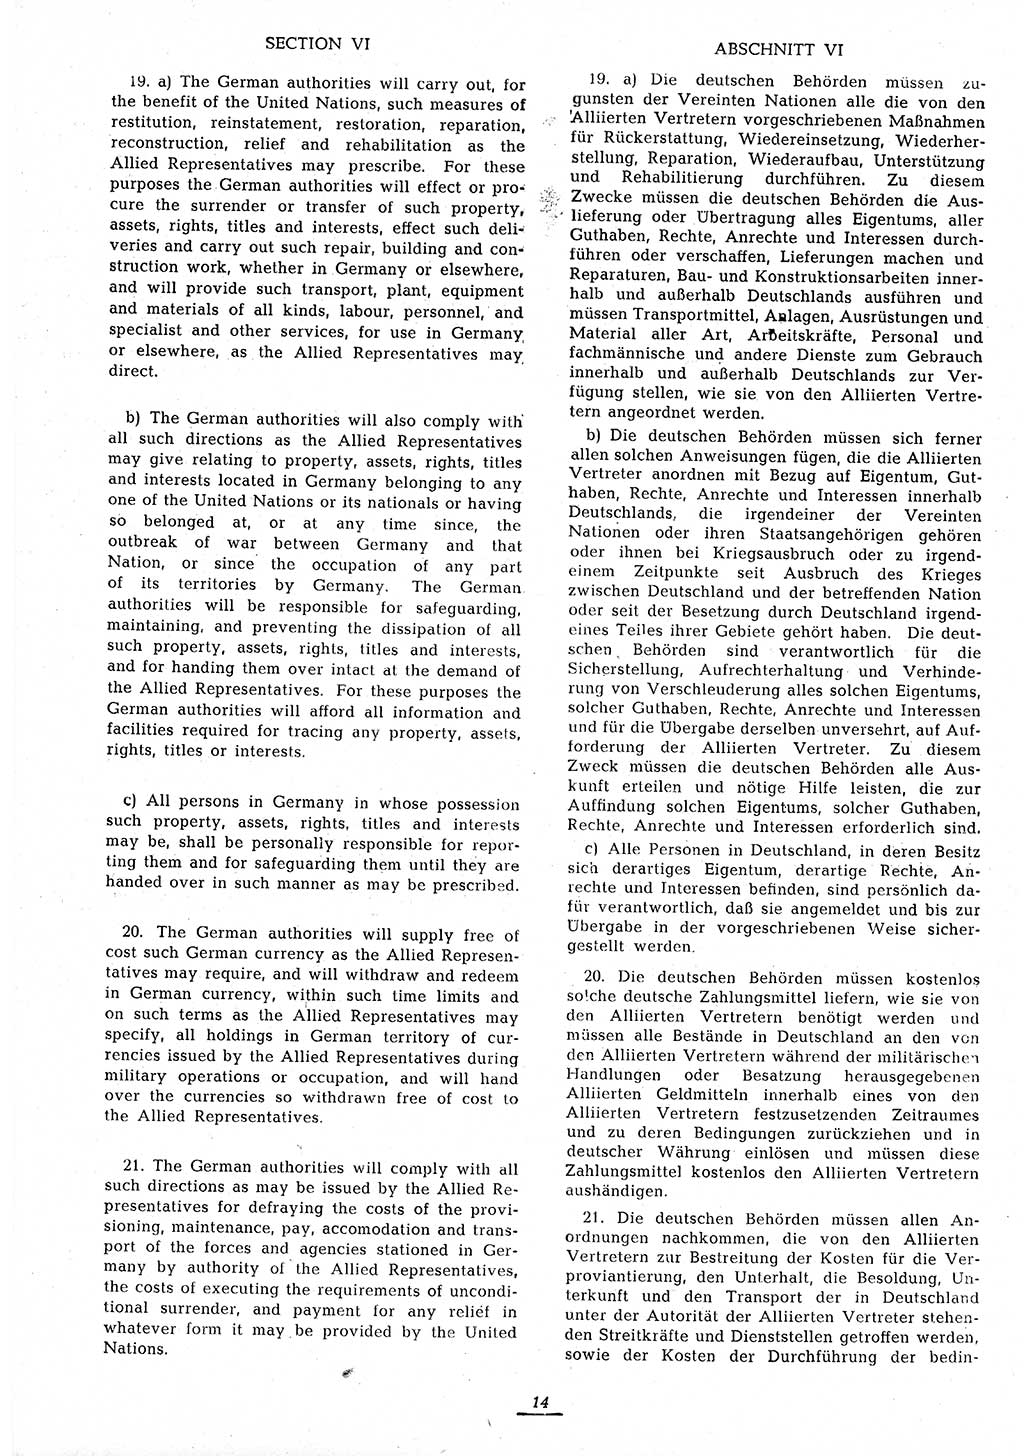 Amtsblatt des Kontrollrats (ABlKR) in Deutschland 1945, Seite 14/2 (ABlKR Dtl. 1945, S. 14/2)